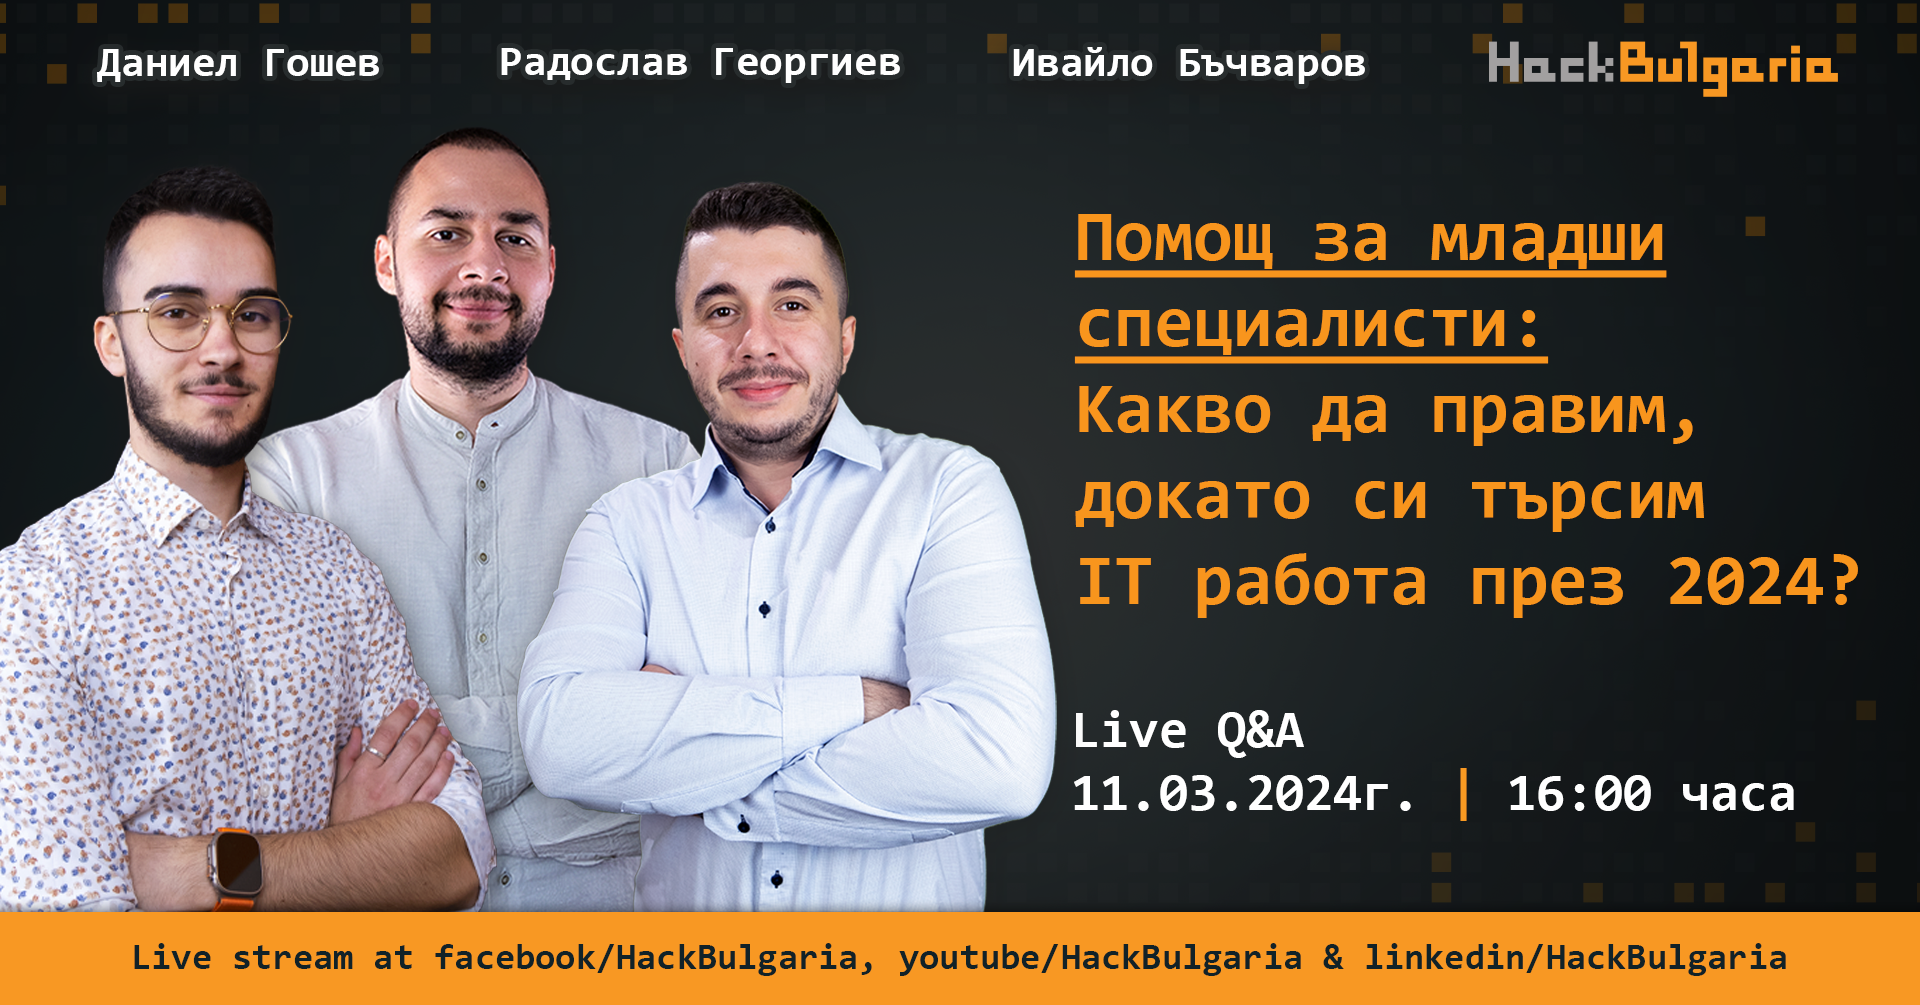 HackBulgaria LiveQ&As